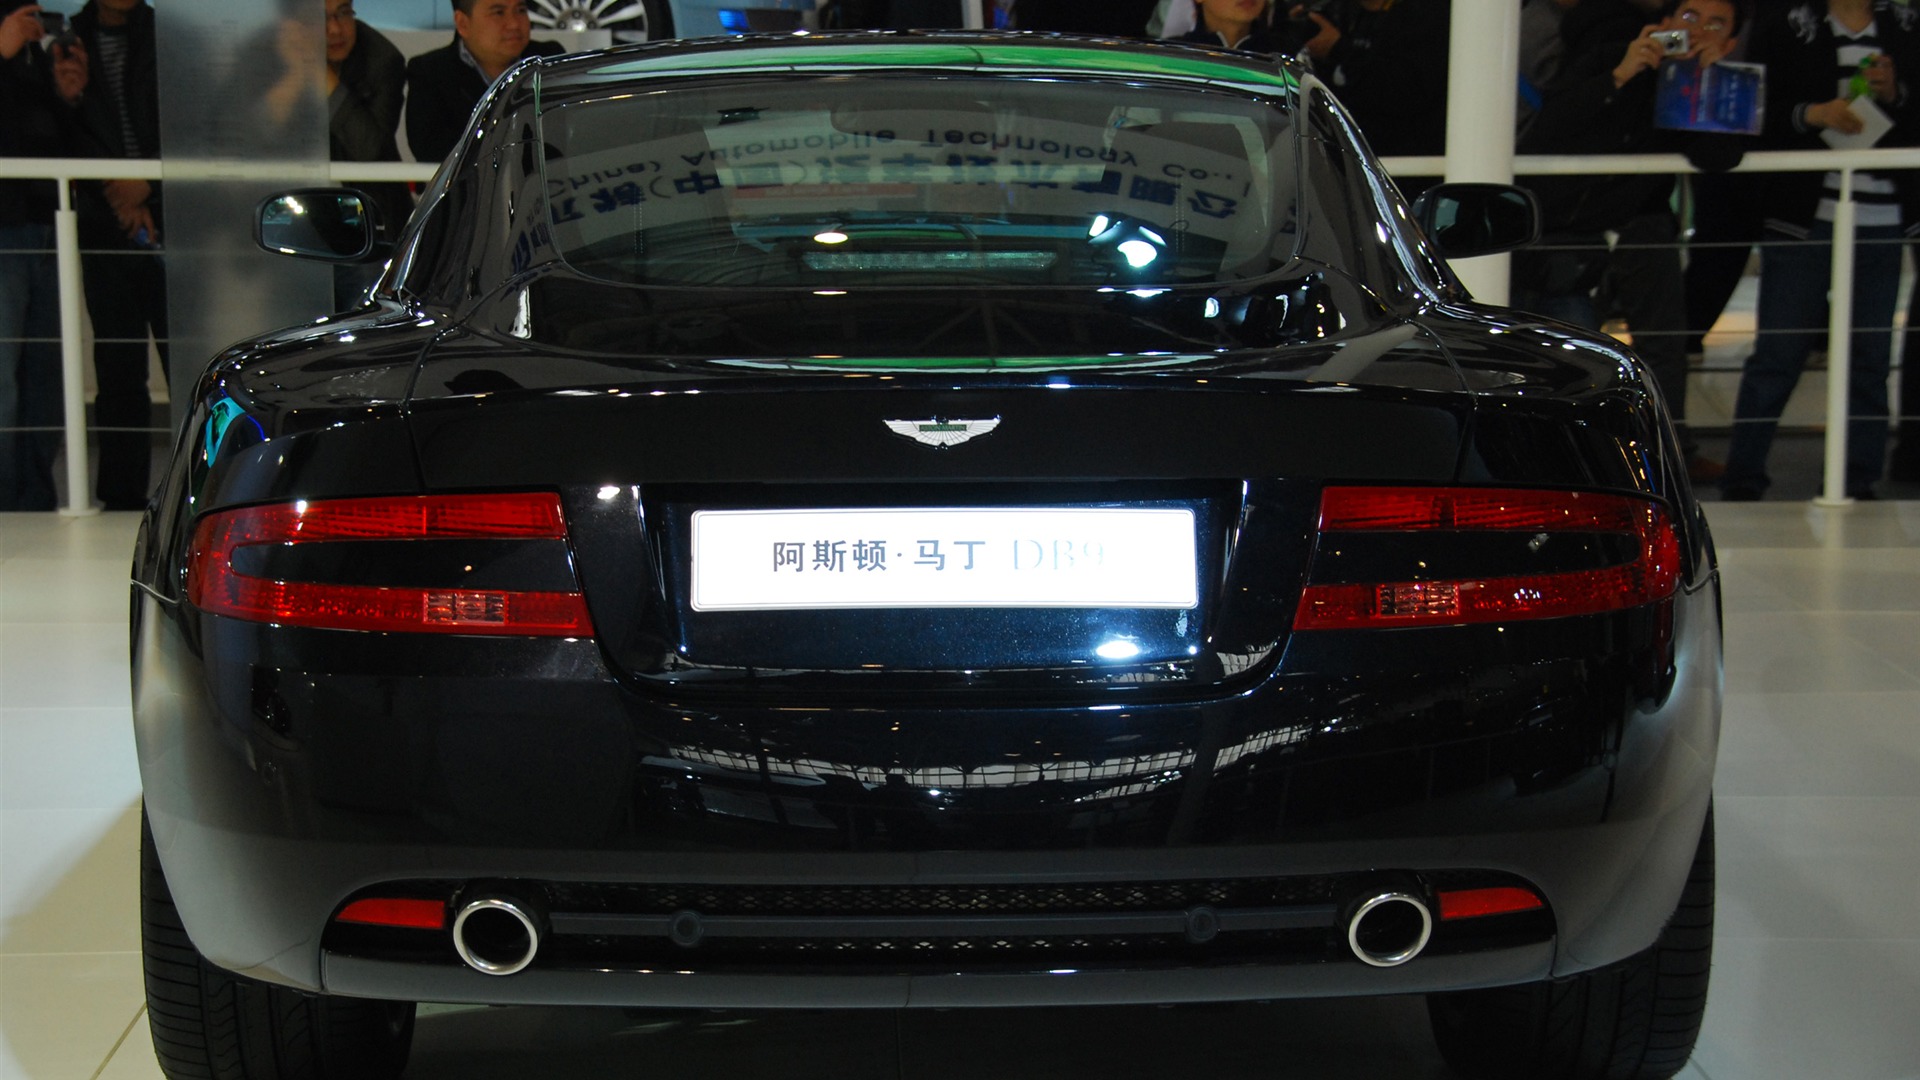 2010北京国际车展(一) (z321x123作品)30 - 1920x1080